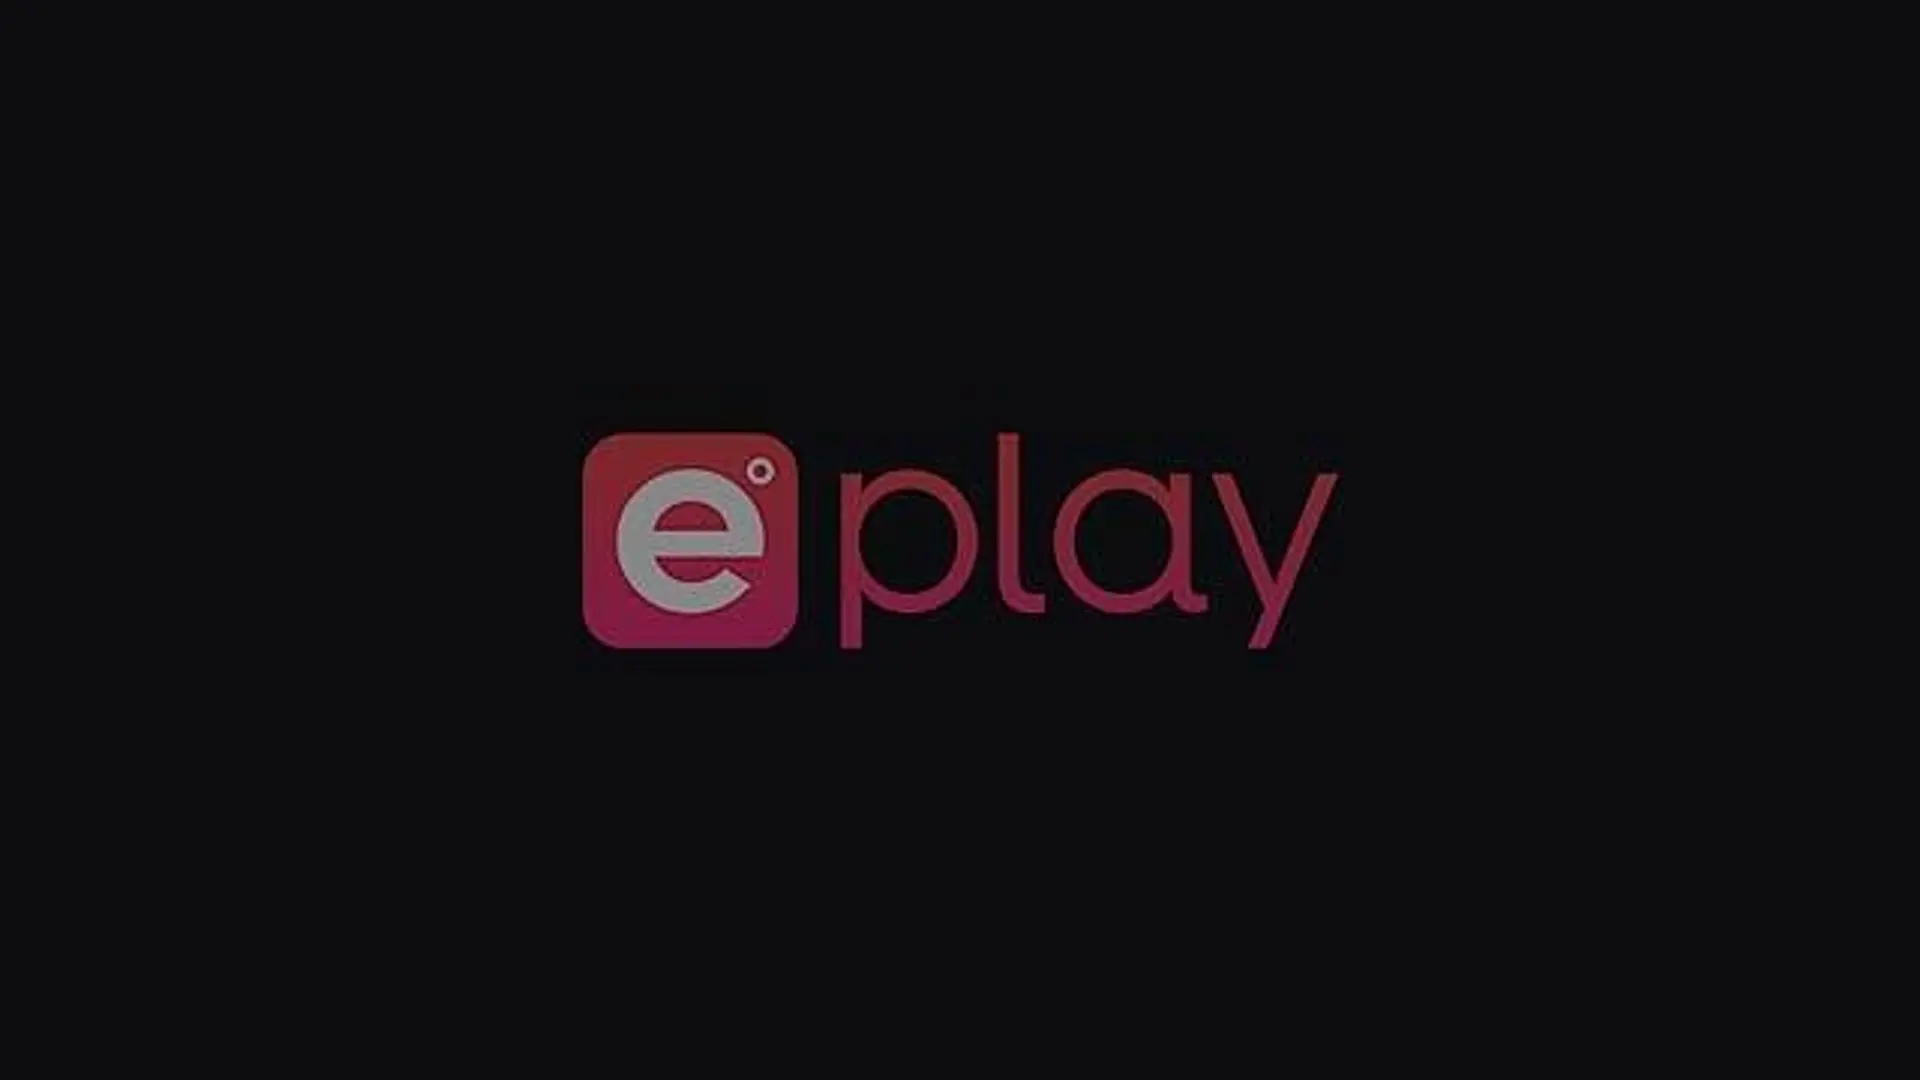 ErinHart's ePlay Channel